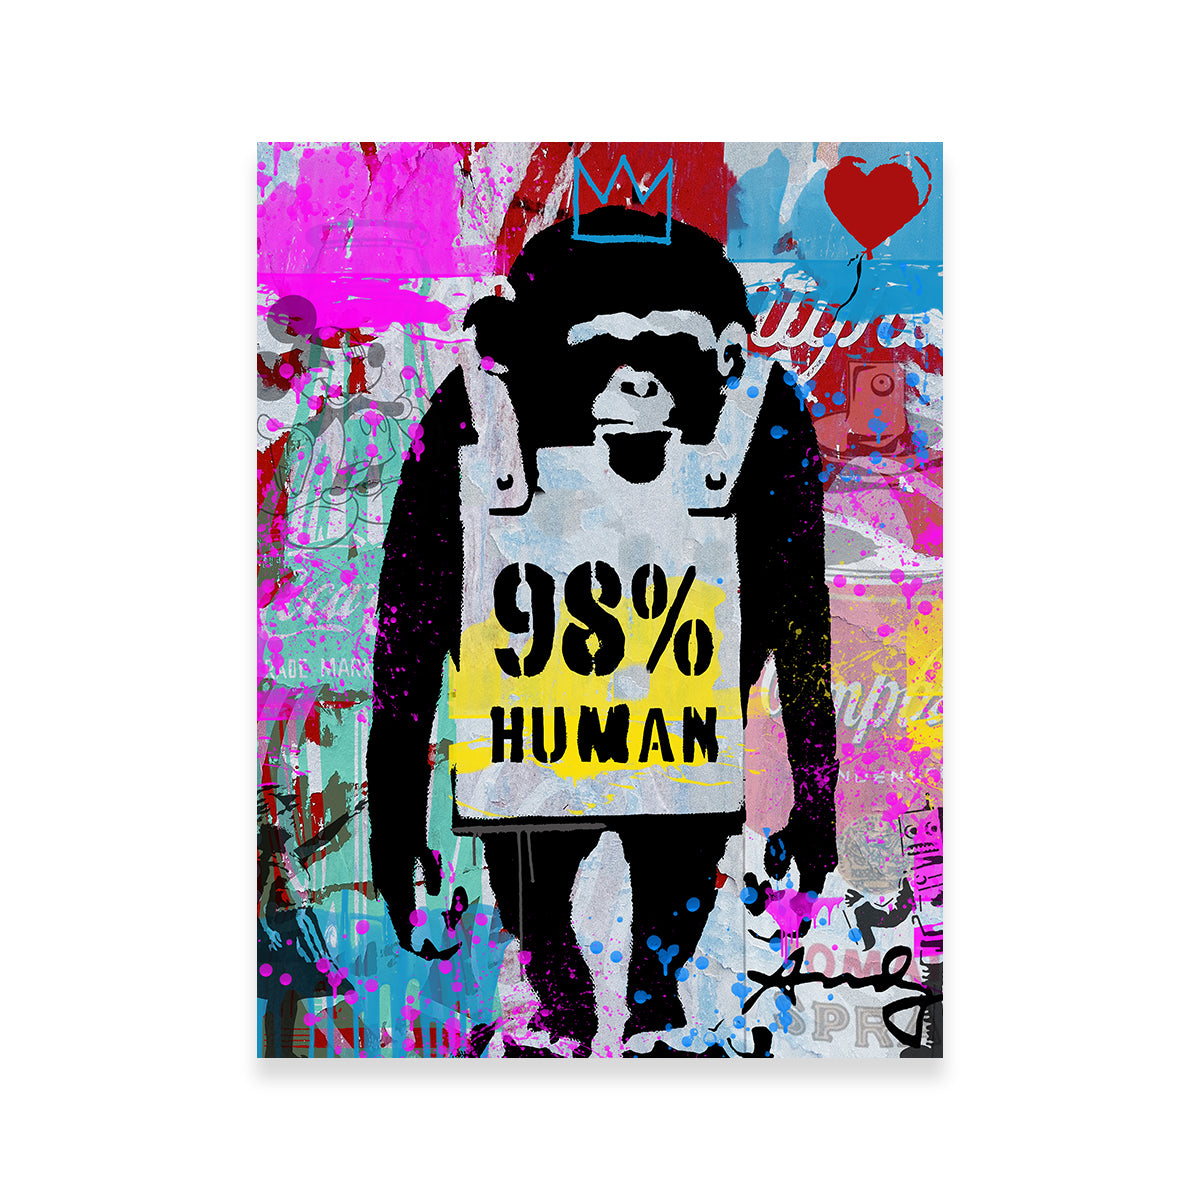 98% Human